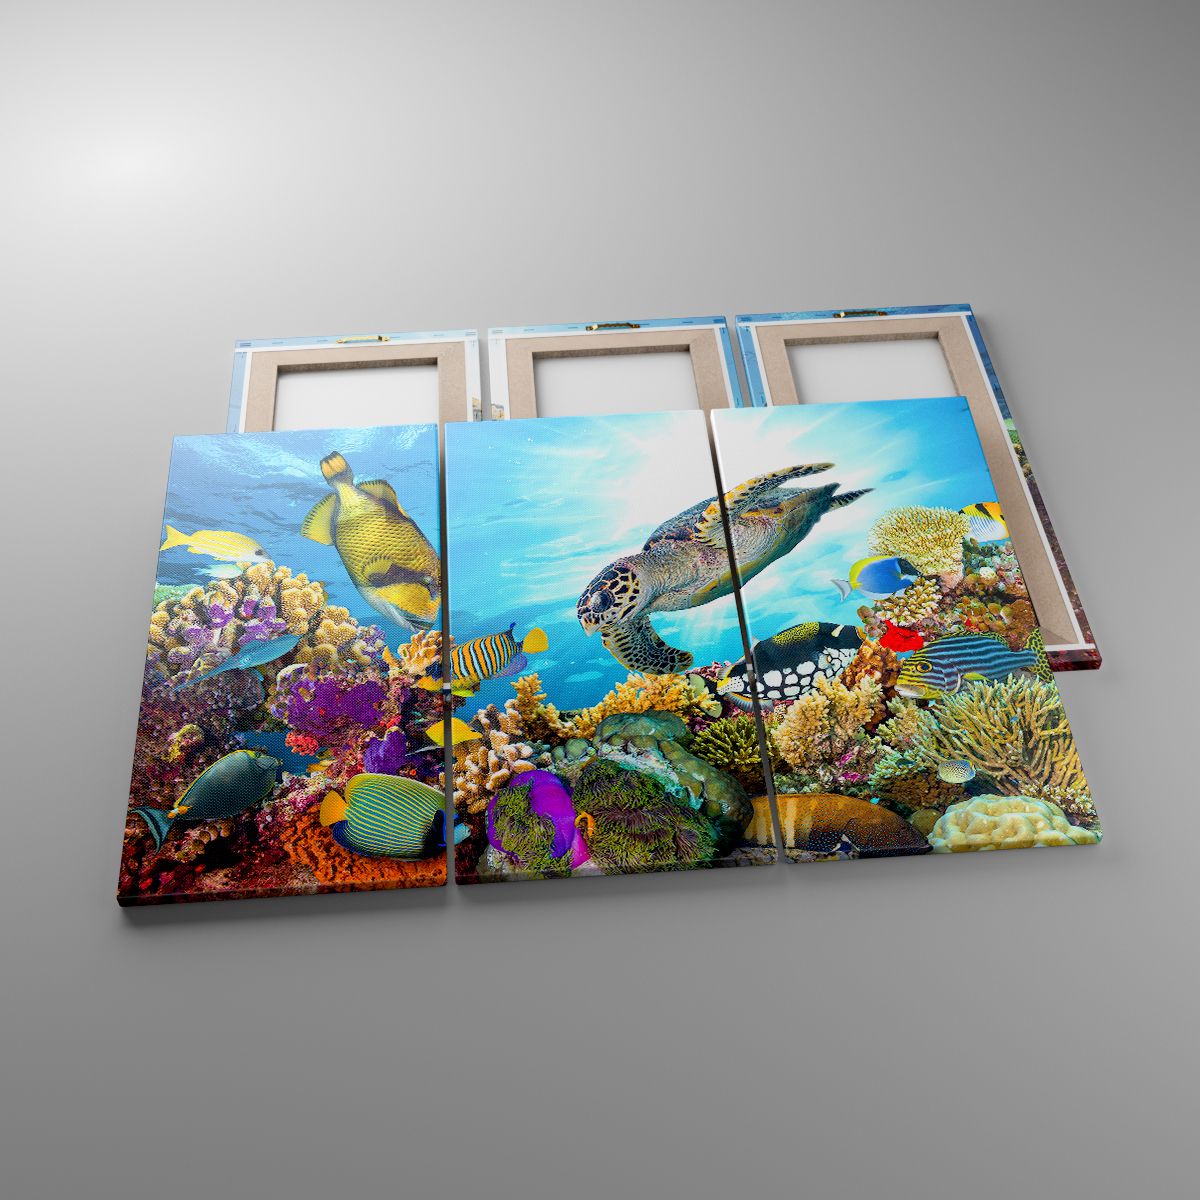 Obrazy Rafa Koralowa, Obrazy Morze, Obrazy Podwodny Świat, Obrazy Żółw, Obrazy Ryby